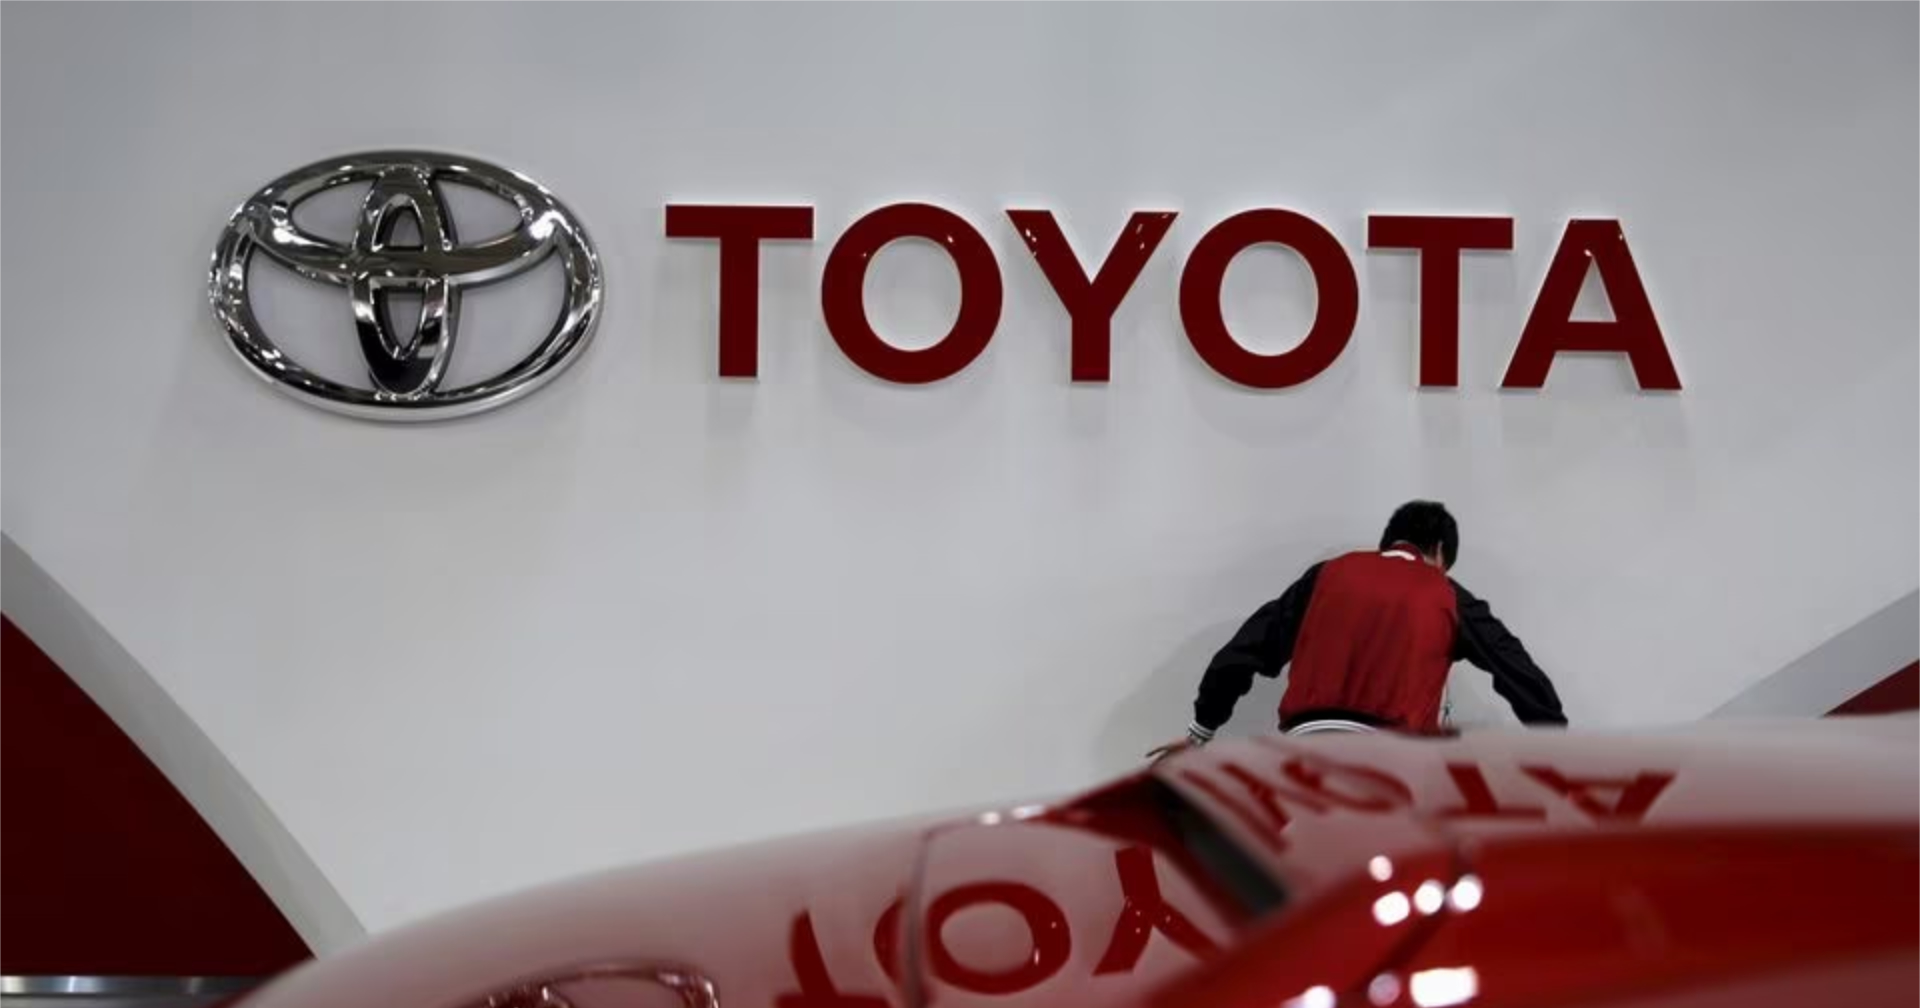 ญี่ปุ่นจะให้เงินสนับสนุน 29,578 ล้านบาทแก่ Toyota สำหรับผลิตแบตเตอรี่อีวีในประเทศ